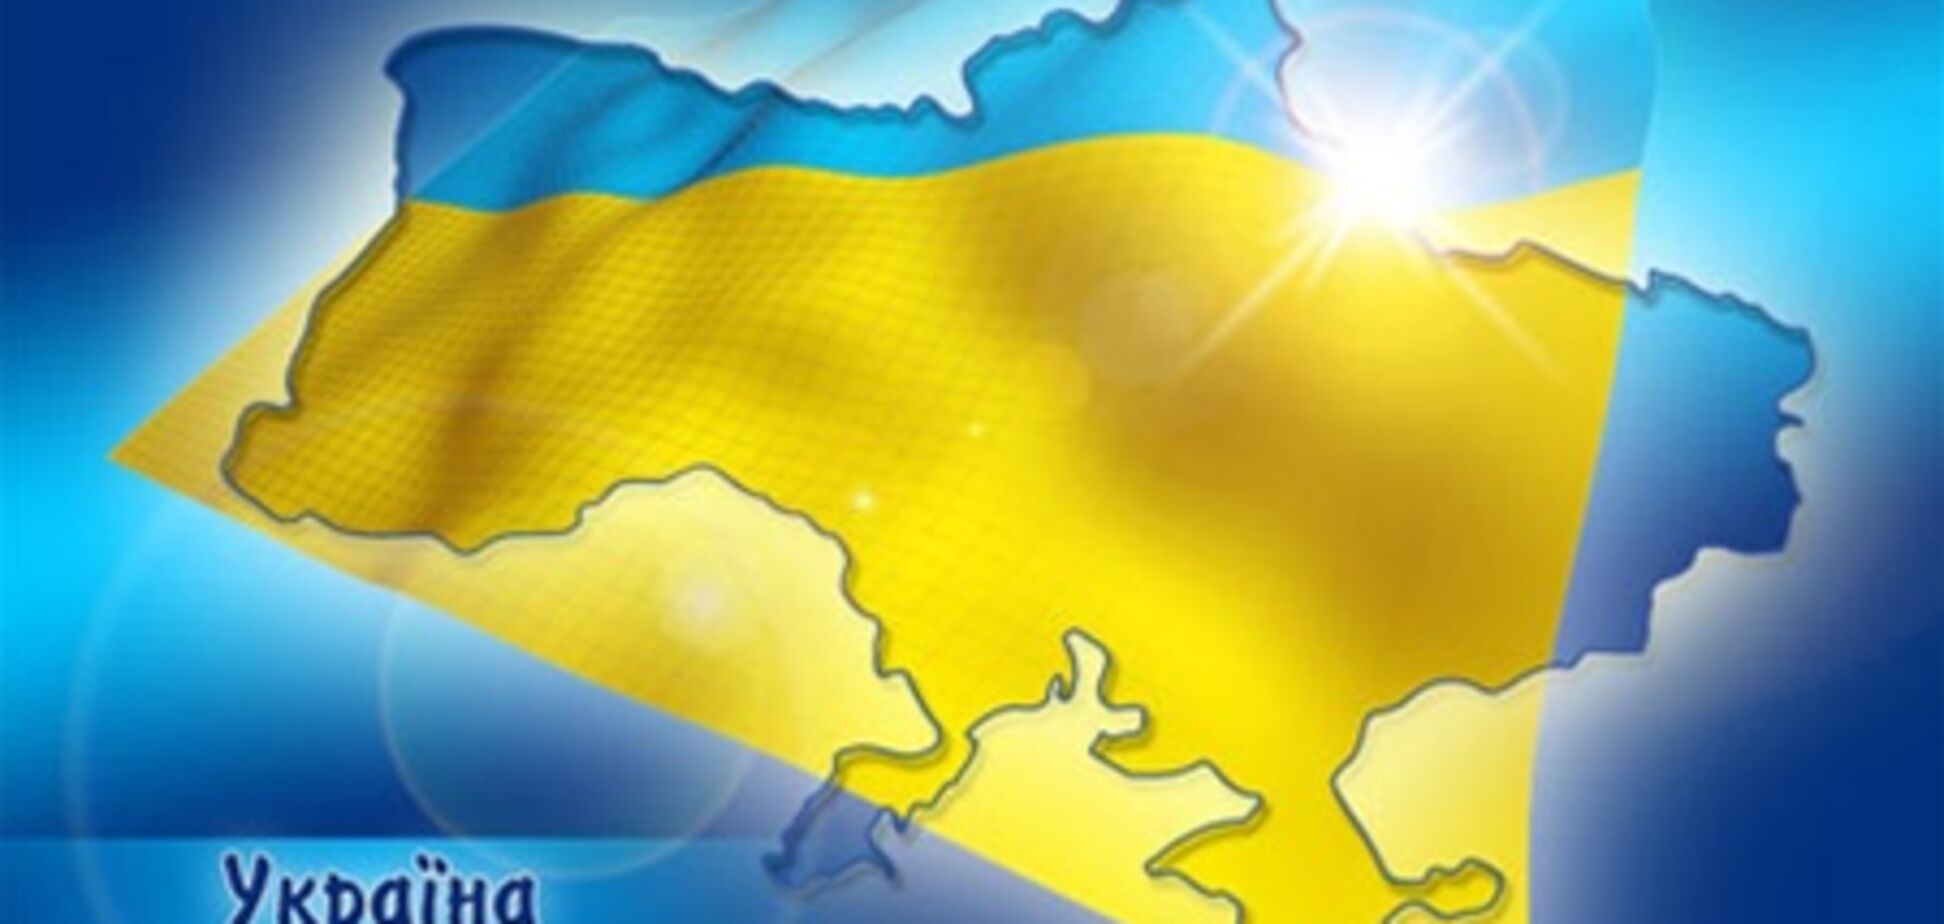 Германия даст Украине 100 тыс. евро на защиту прав человека